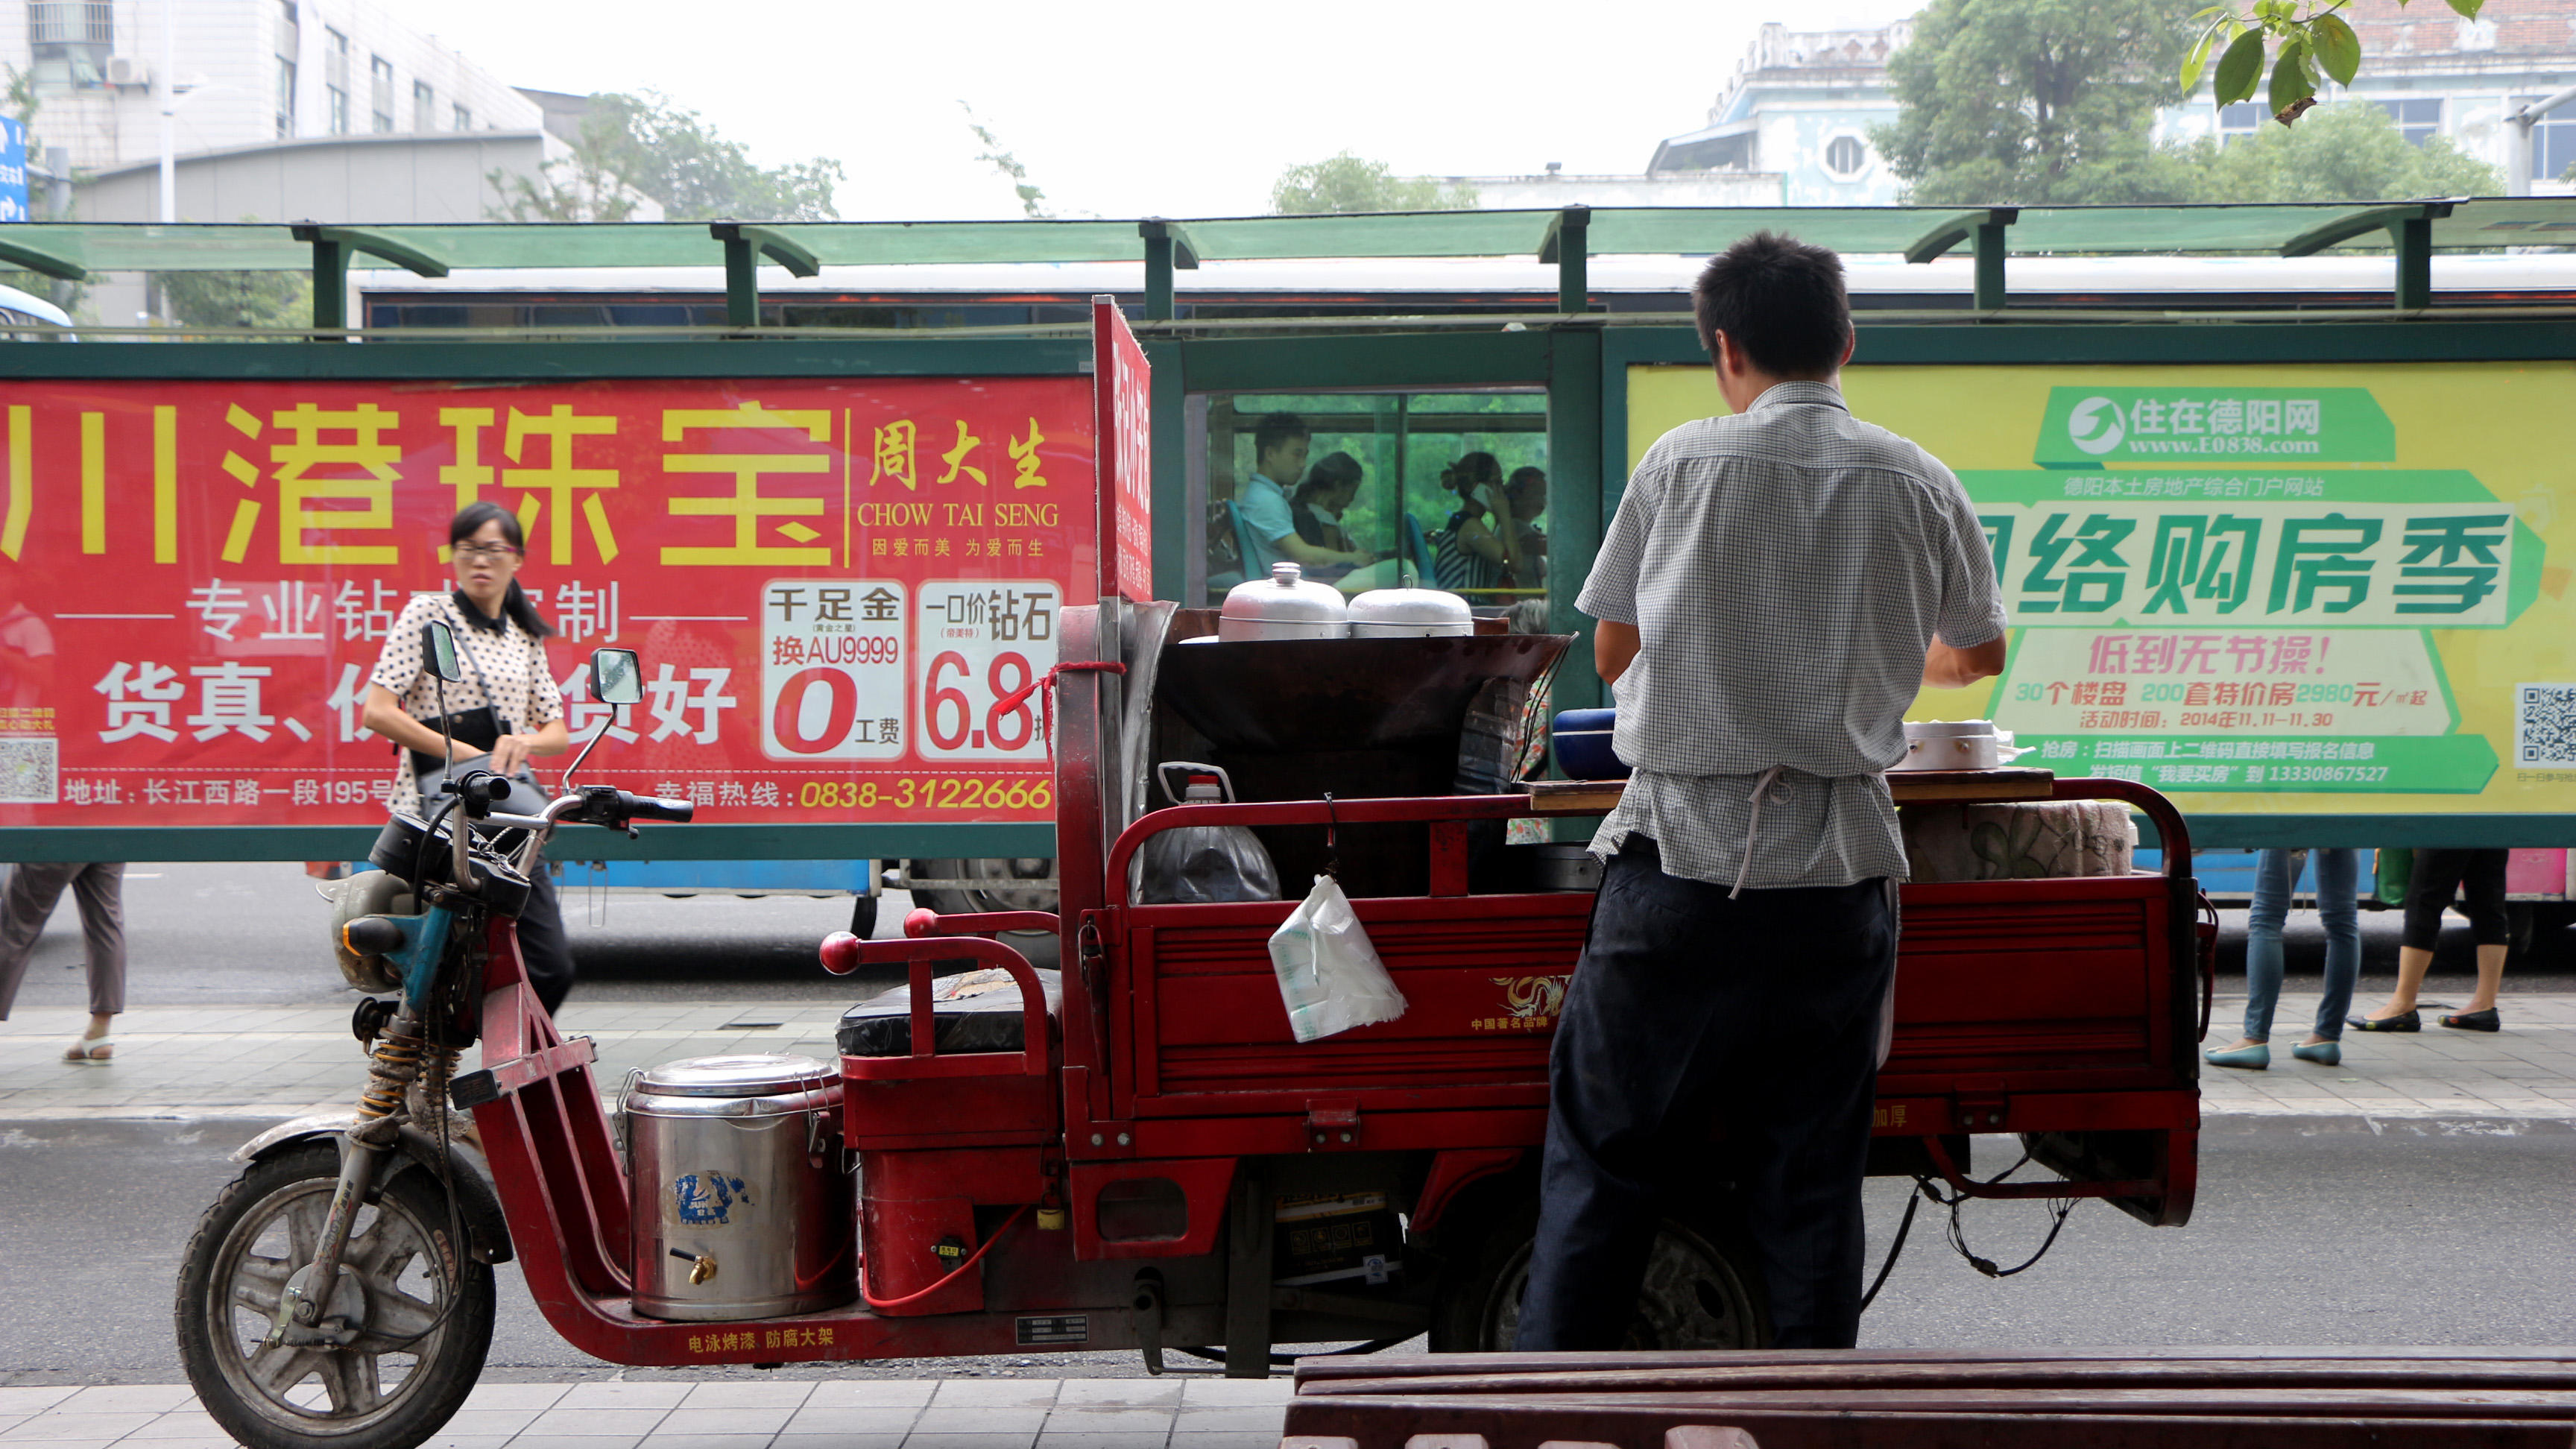 "路边的摊贩,公交站旁边,为赶时间的上班族提供最快的营养餐.